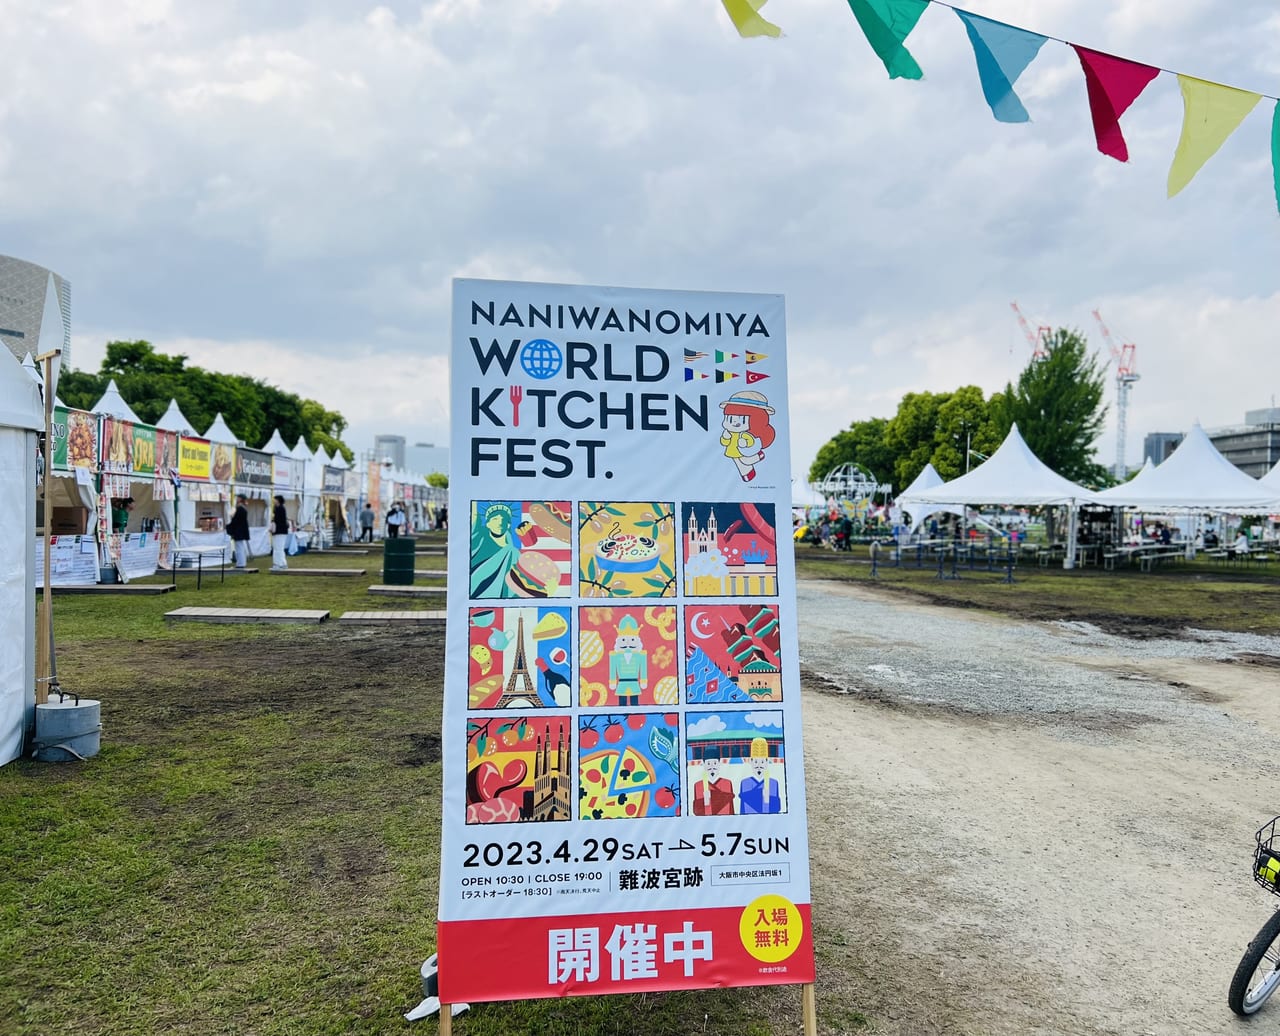 naniwanomiya world kitchen fest